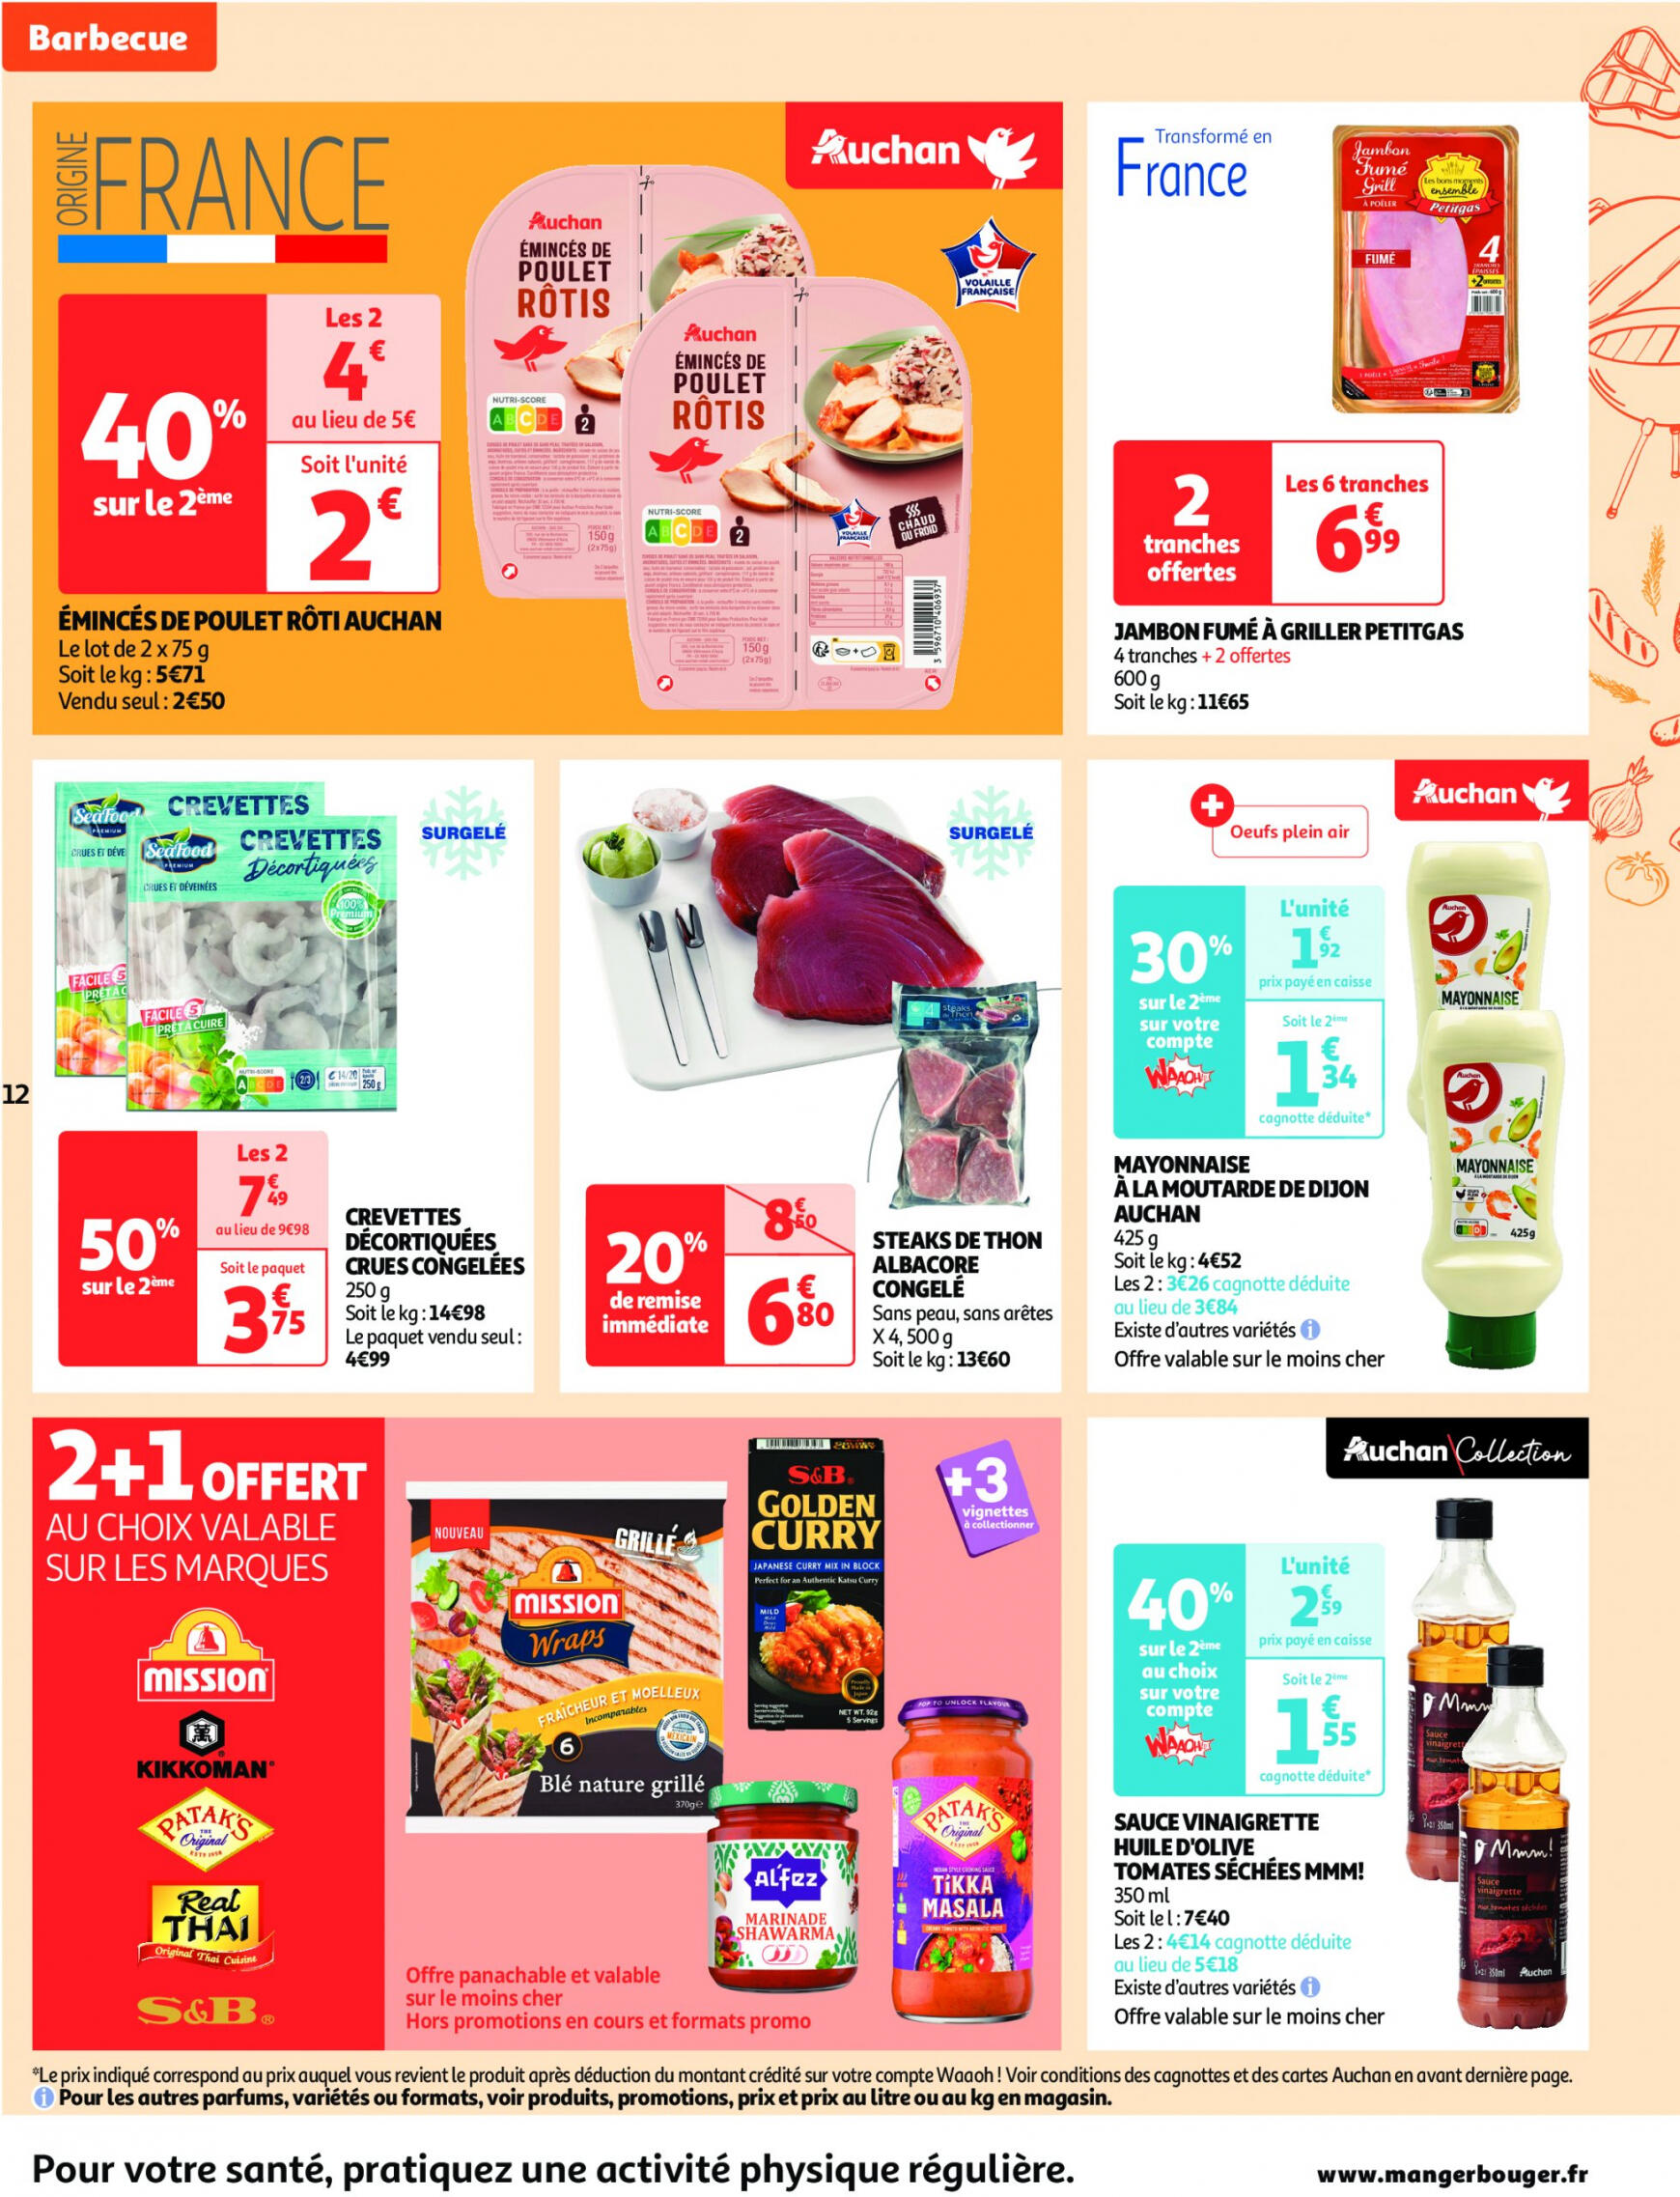 auchan - Auchan supermarché - Faites le plein de bonnes affaires folder huidig 22.05. - 26.05. - page: 12